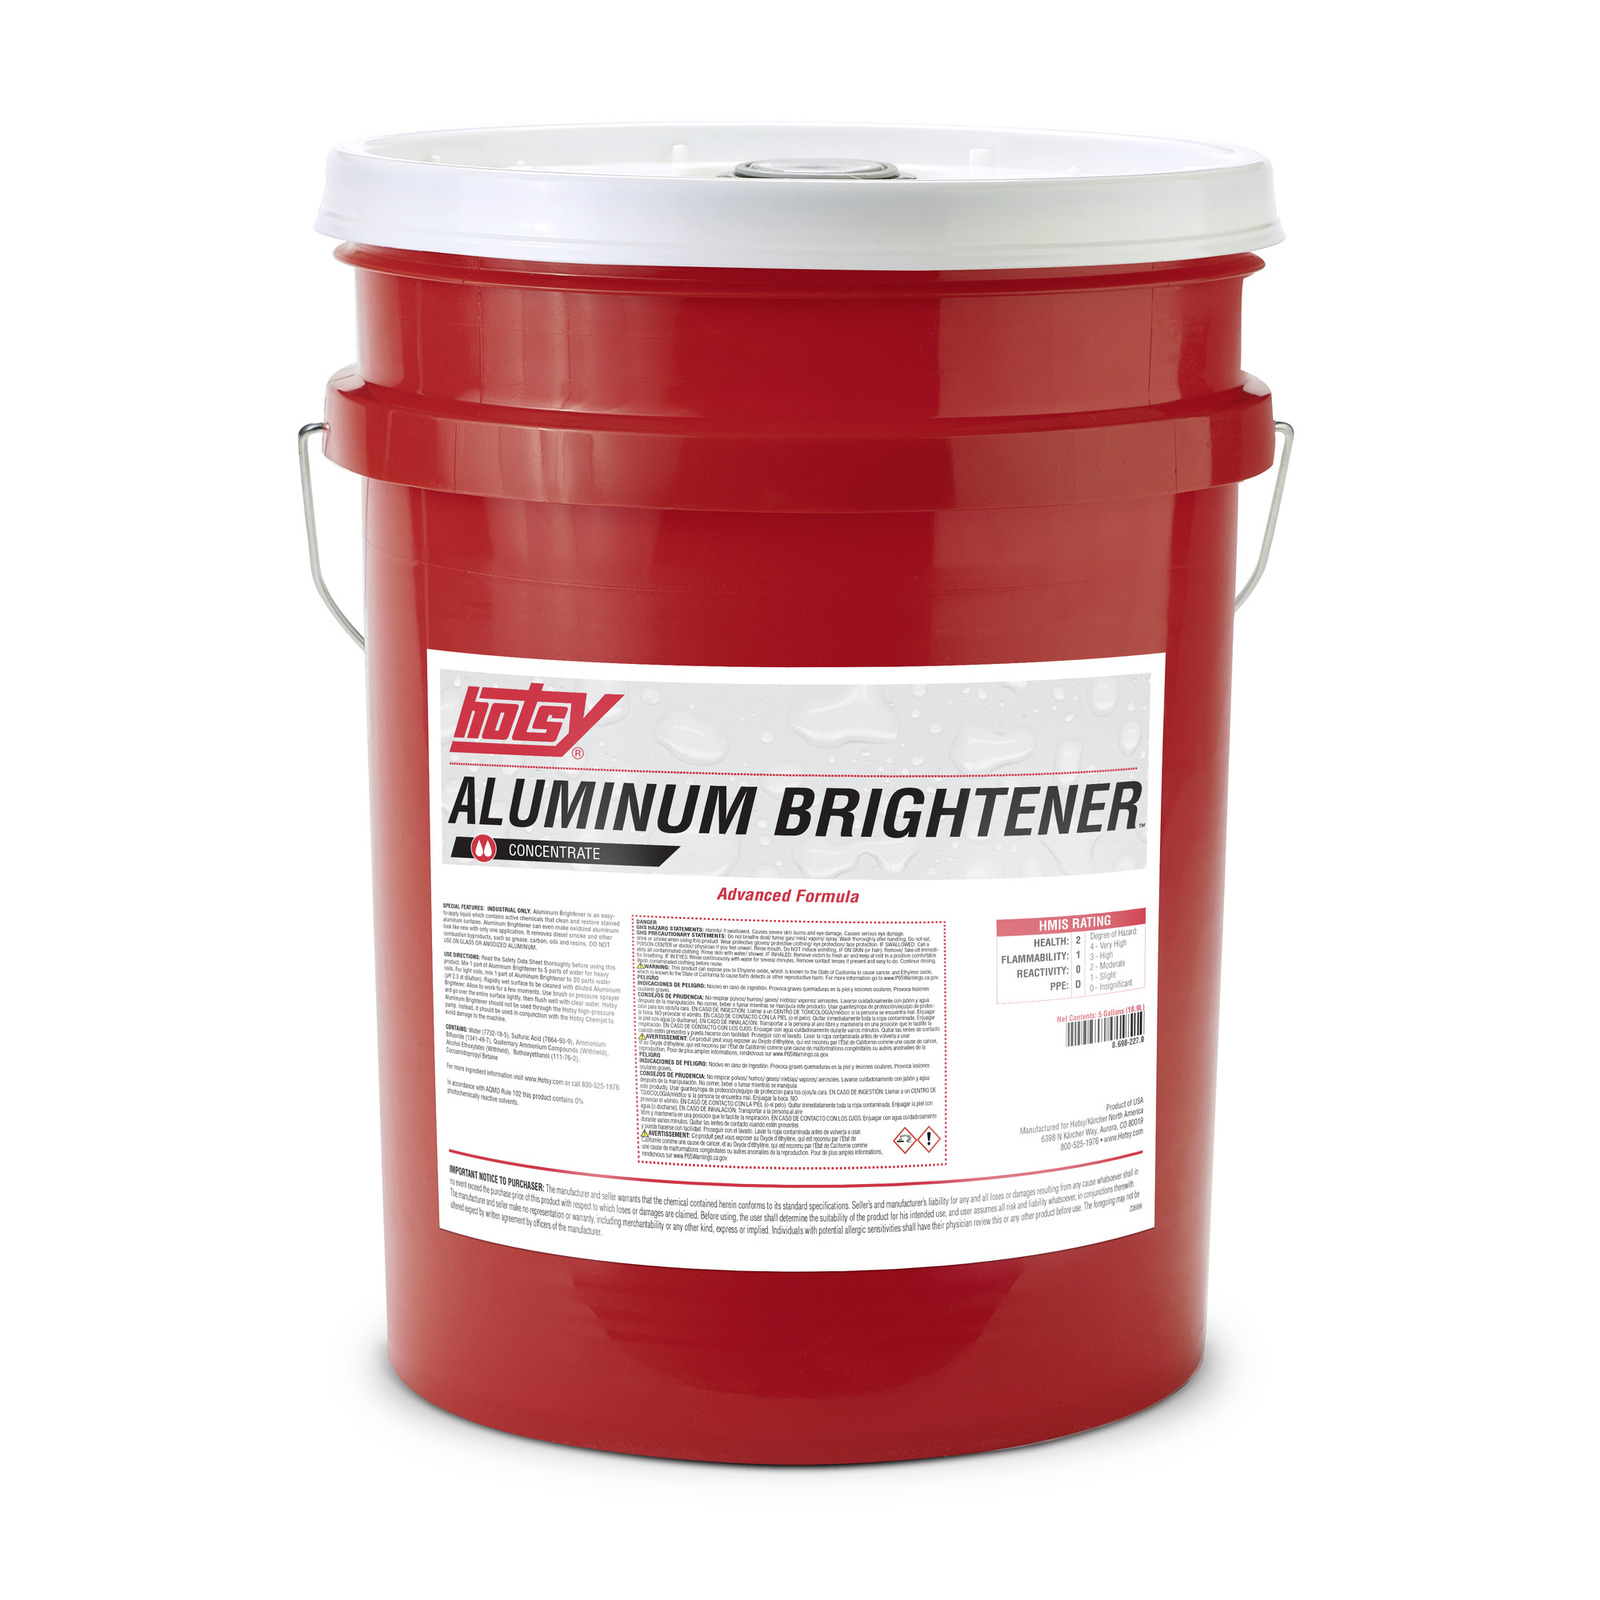 Advanced Formula Aluminum Brightener